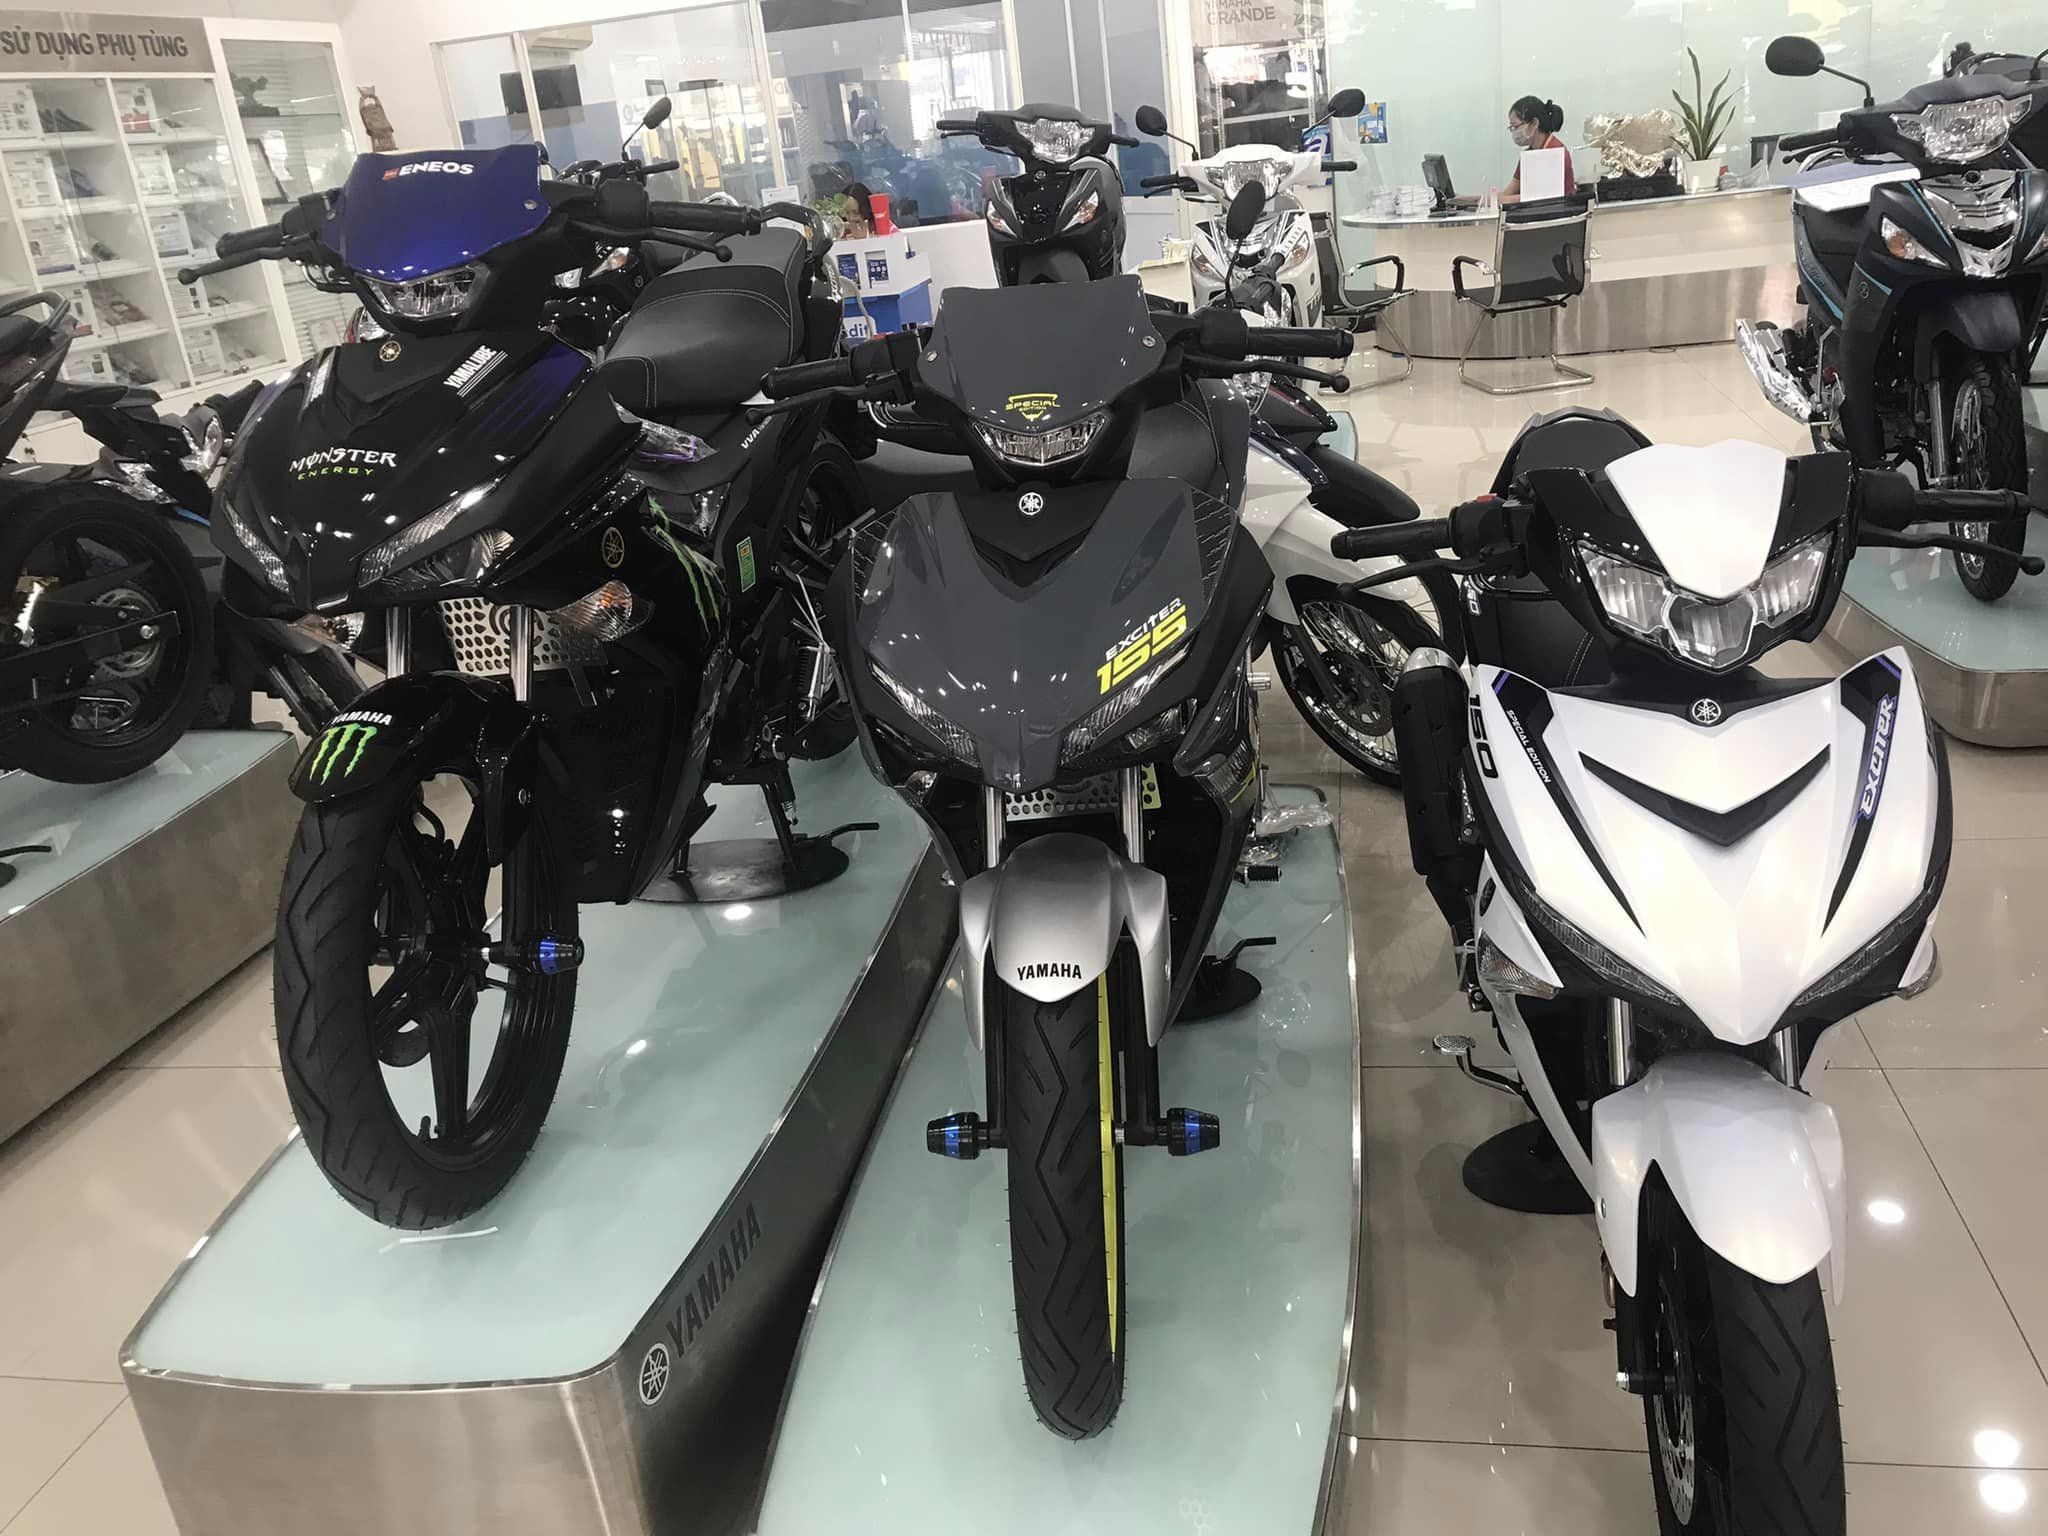 Top giá xe máy Yamaha giá rẻ tại cửa hàng HCM